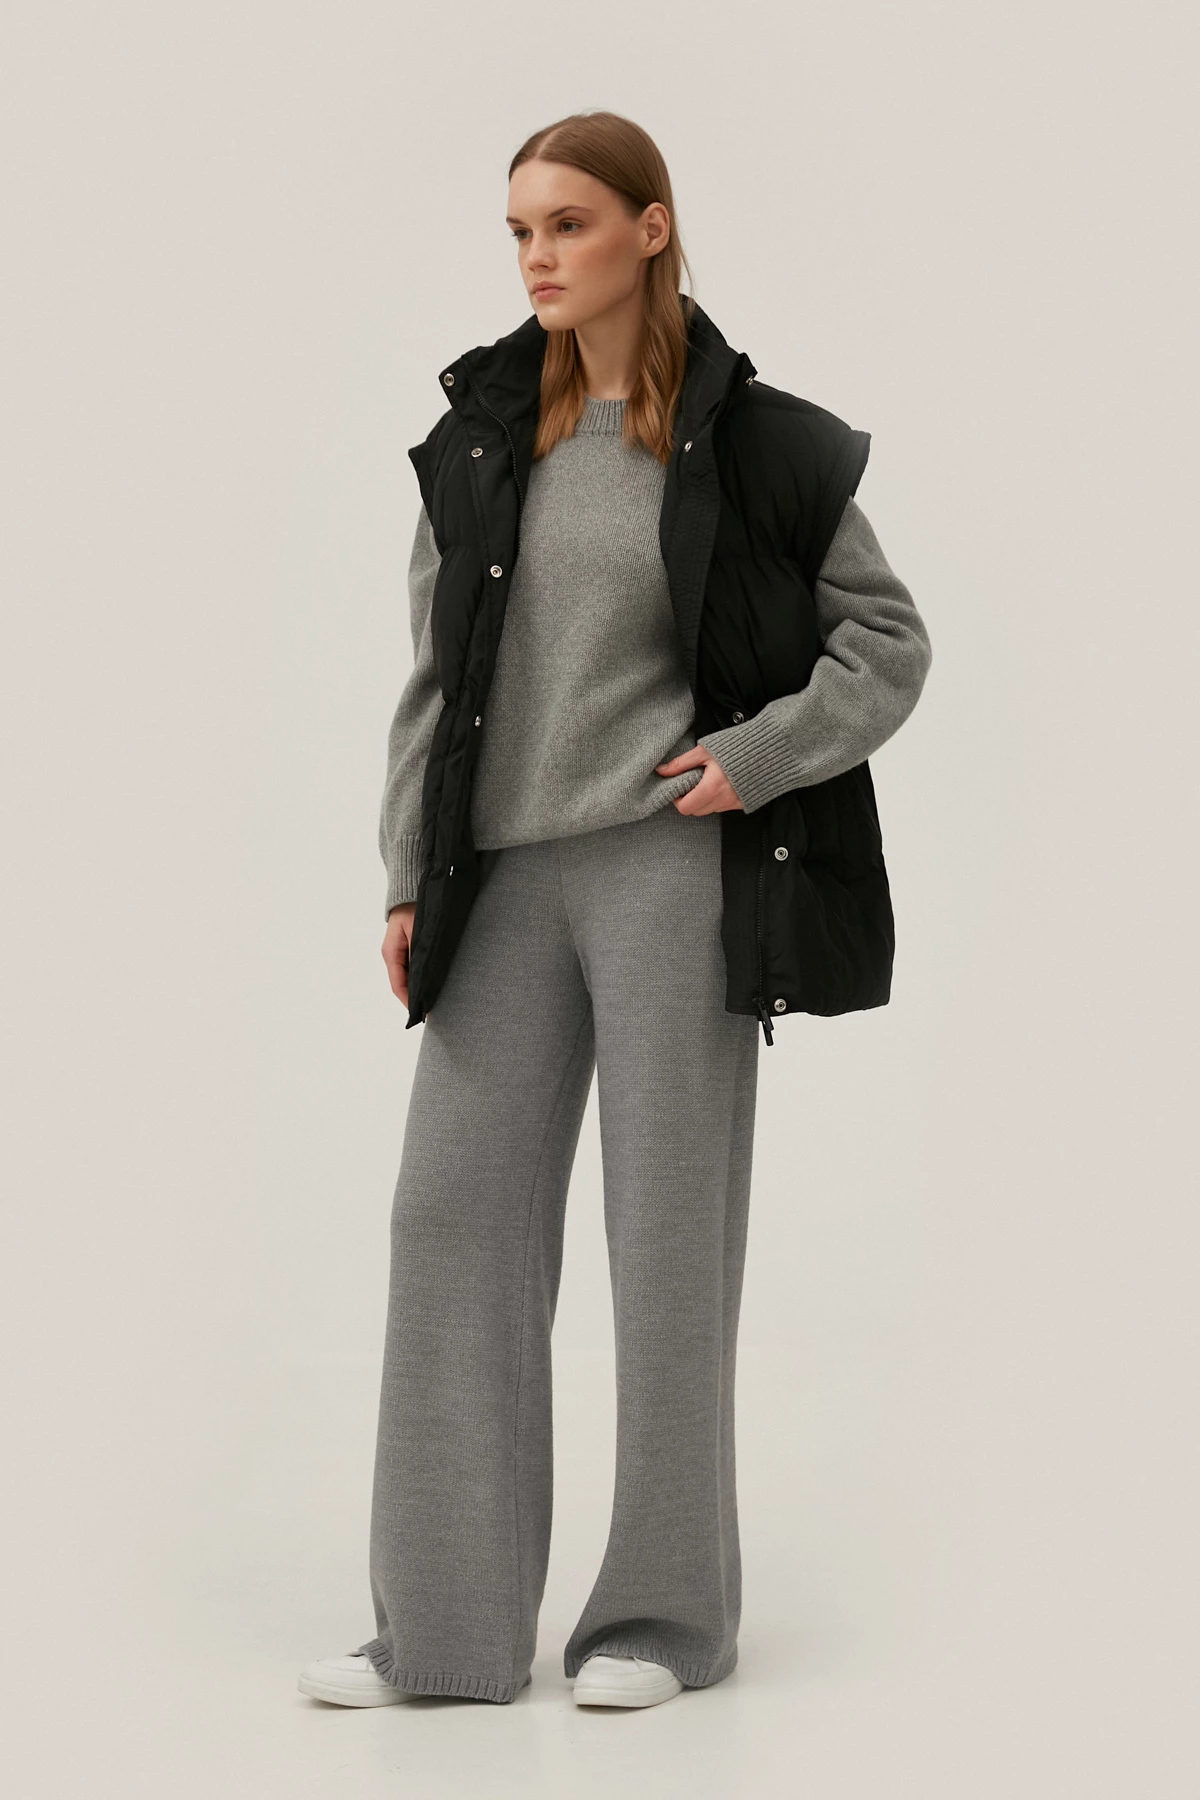 Вязаные удлиненные брюки с шерсти мериноса серого цвета, фото 2